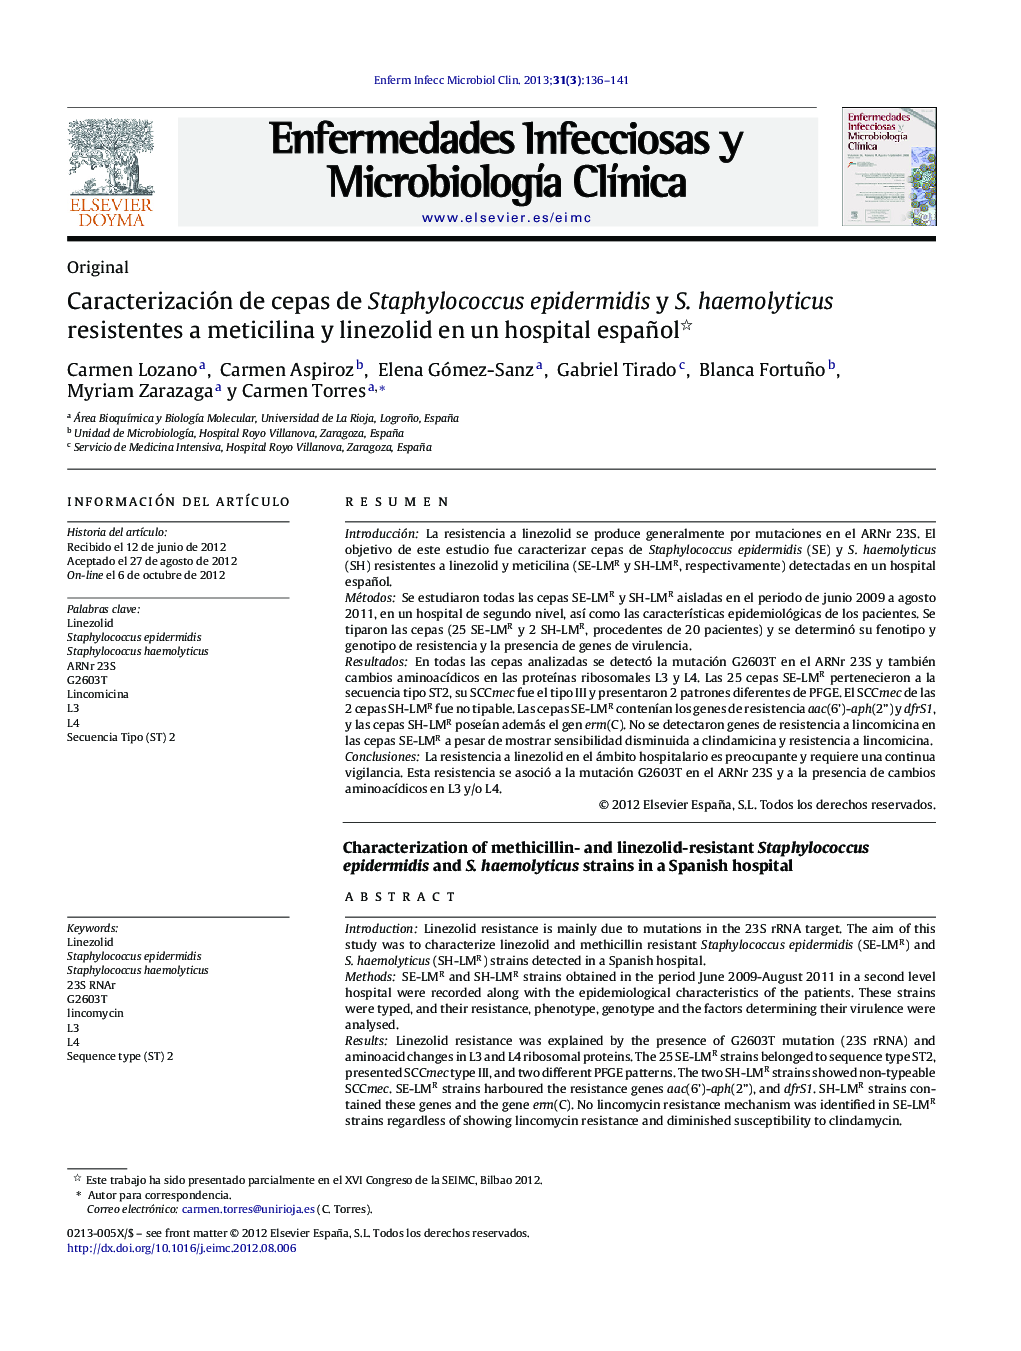 Caracterización de cepas de Staphylococcus epidermidis y S. haemolyticus resistentes a meticilina y linezolid en un hospital español 